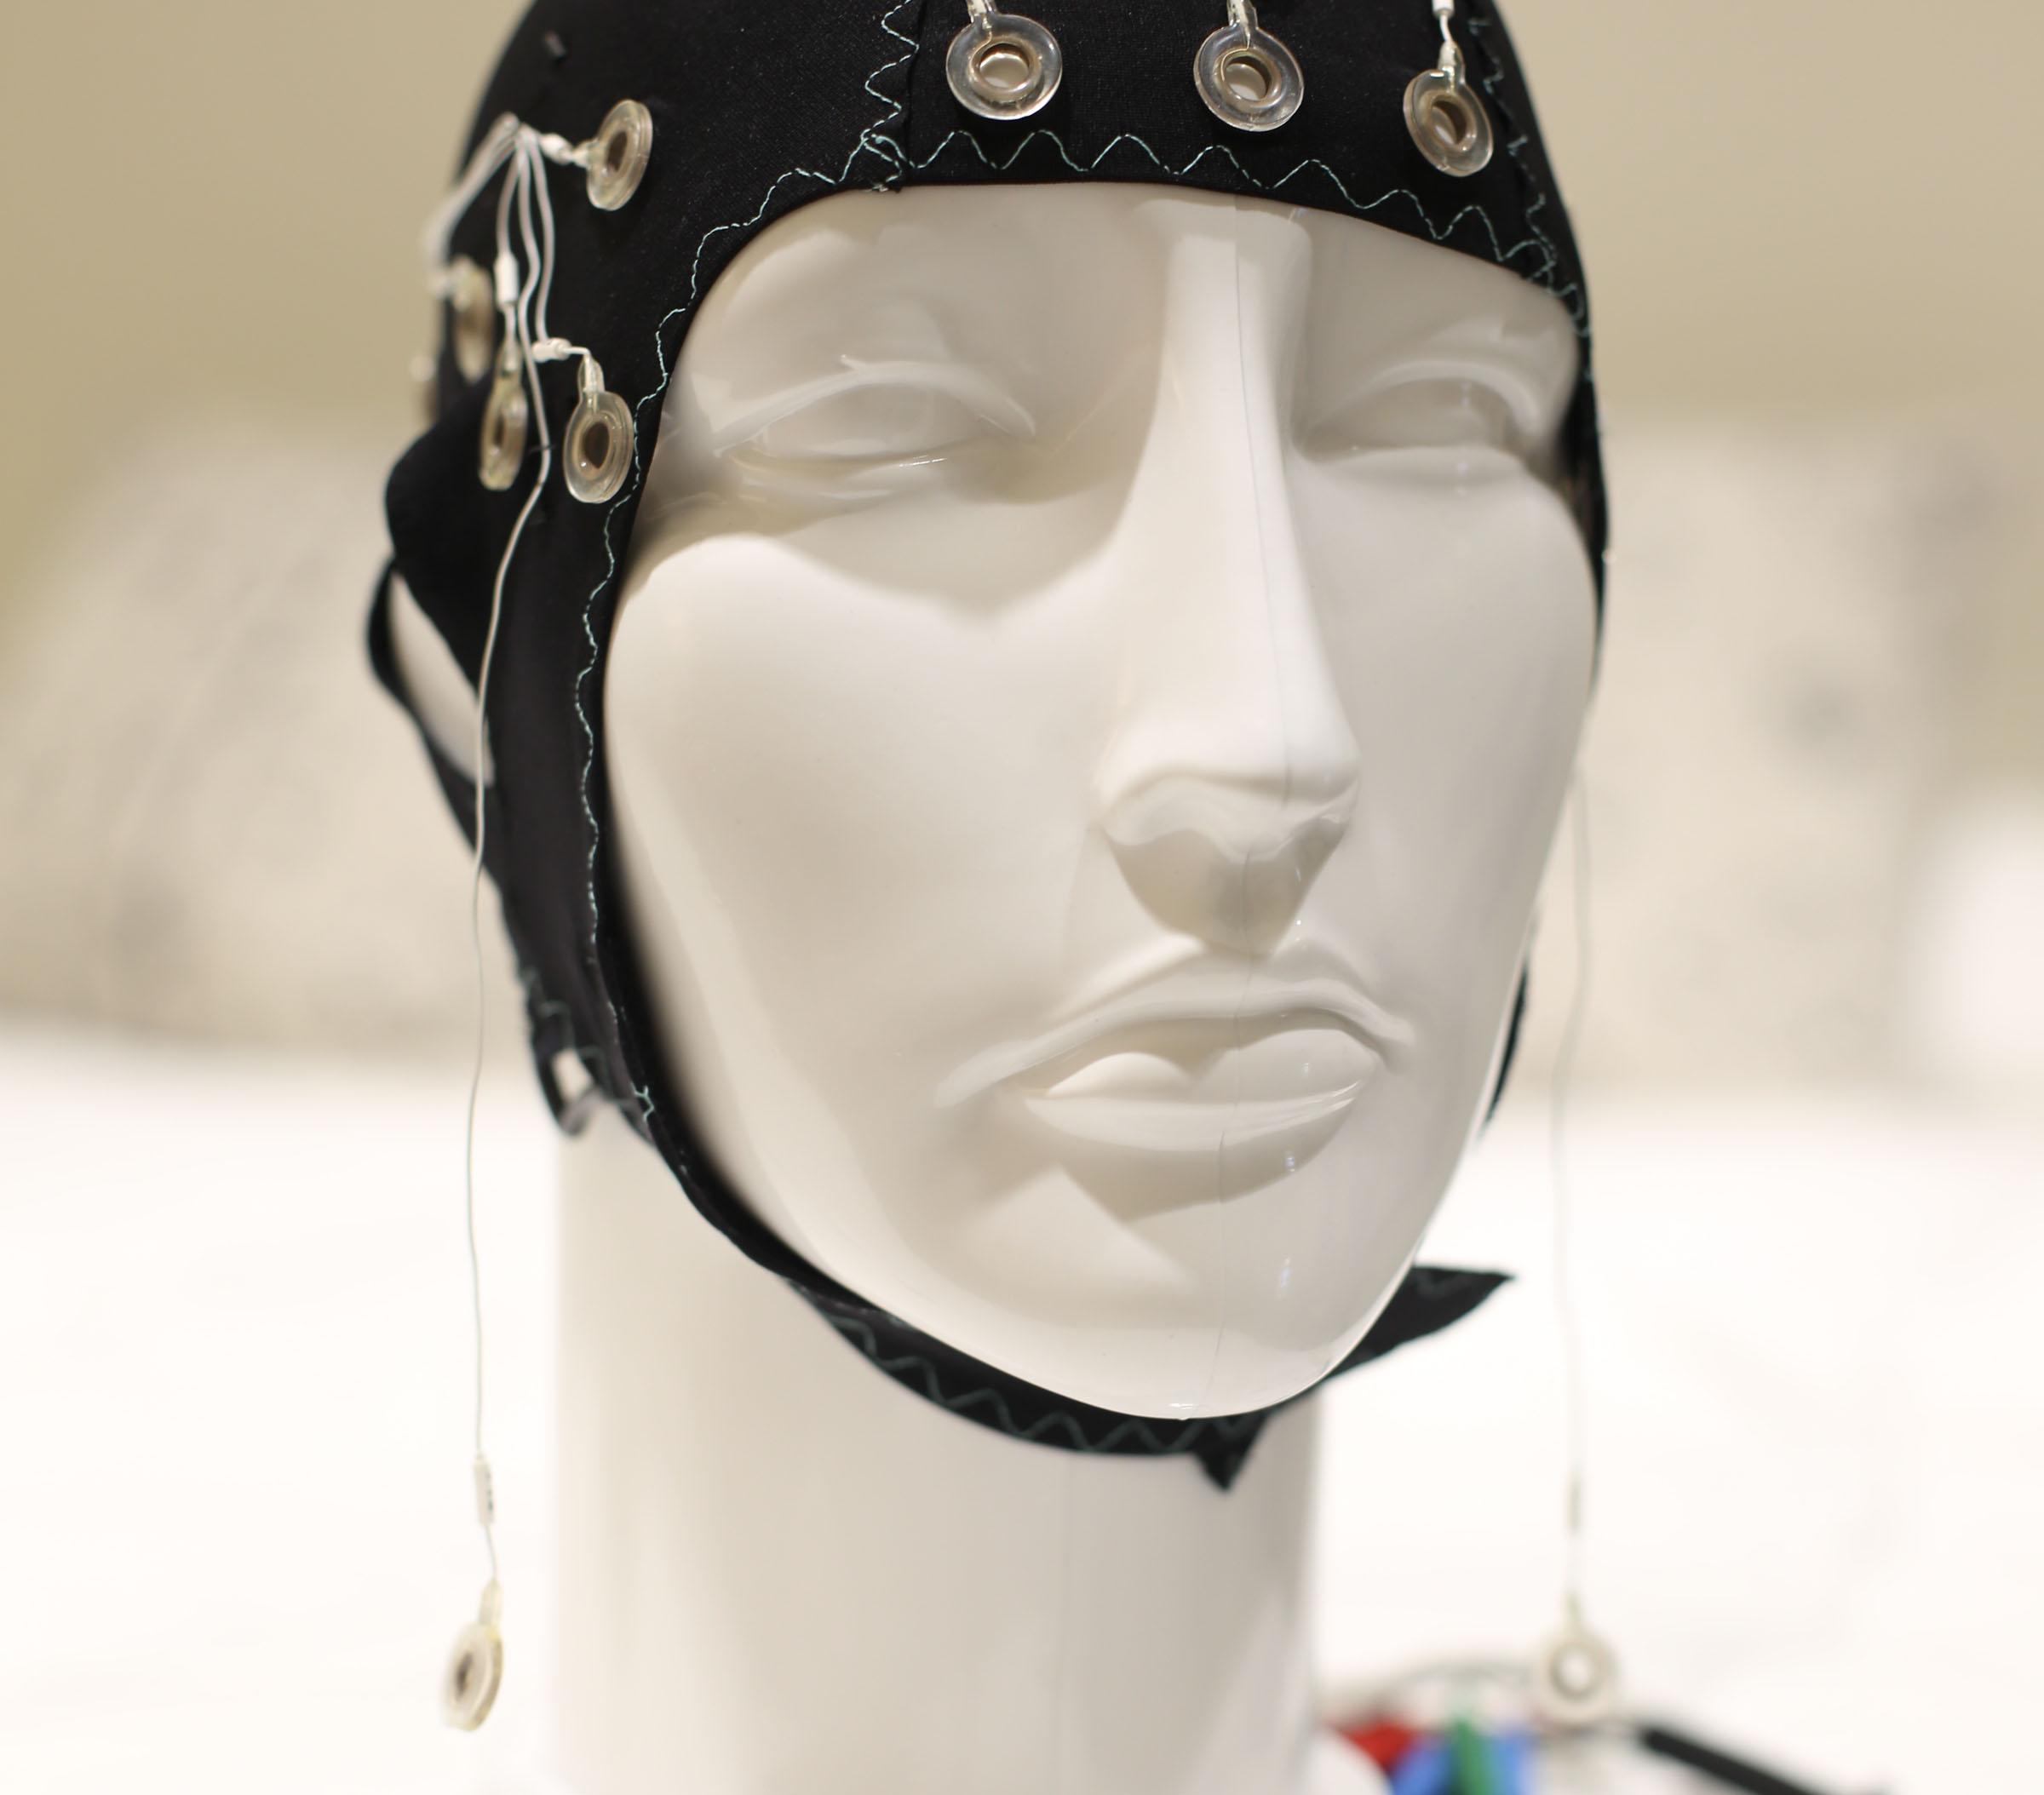 Mannequin wearing an 脑电图描记器